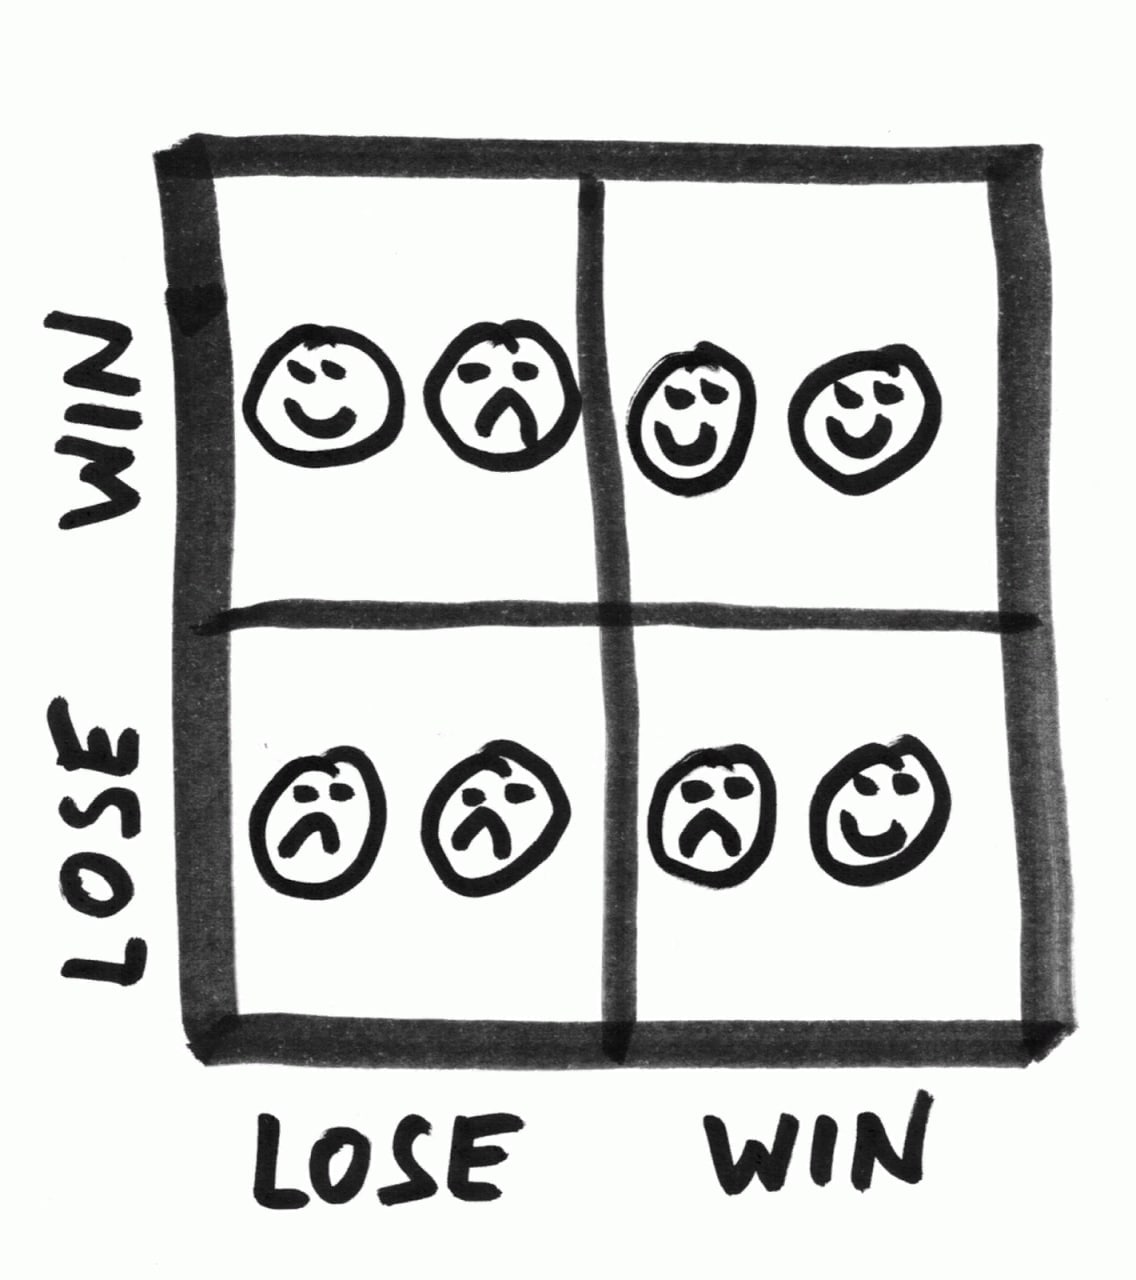 Win lose game. Win win win lose. Win win стратегия переговоров. Win win lose win lose lose. Схема win win.